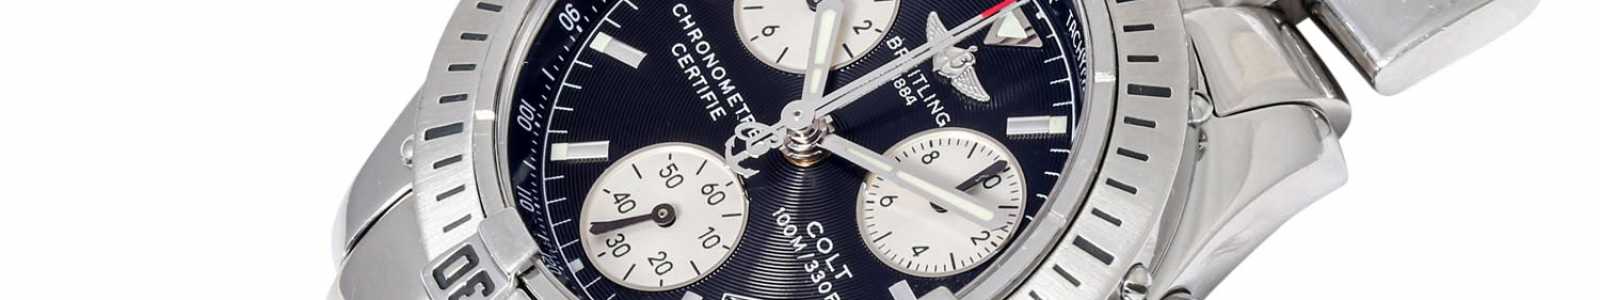 Schmuck, Uhren, Porzellan, Silber, Luxus-Uhren & Accessoires